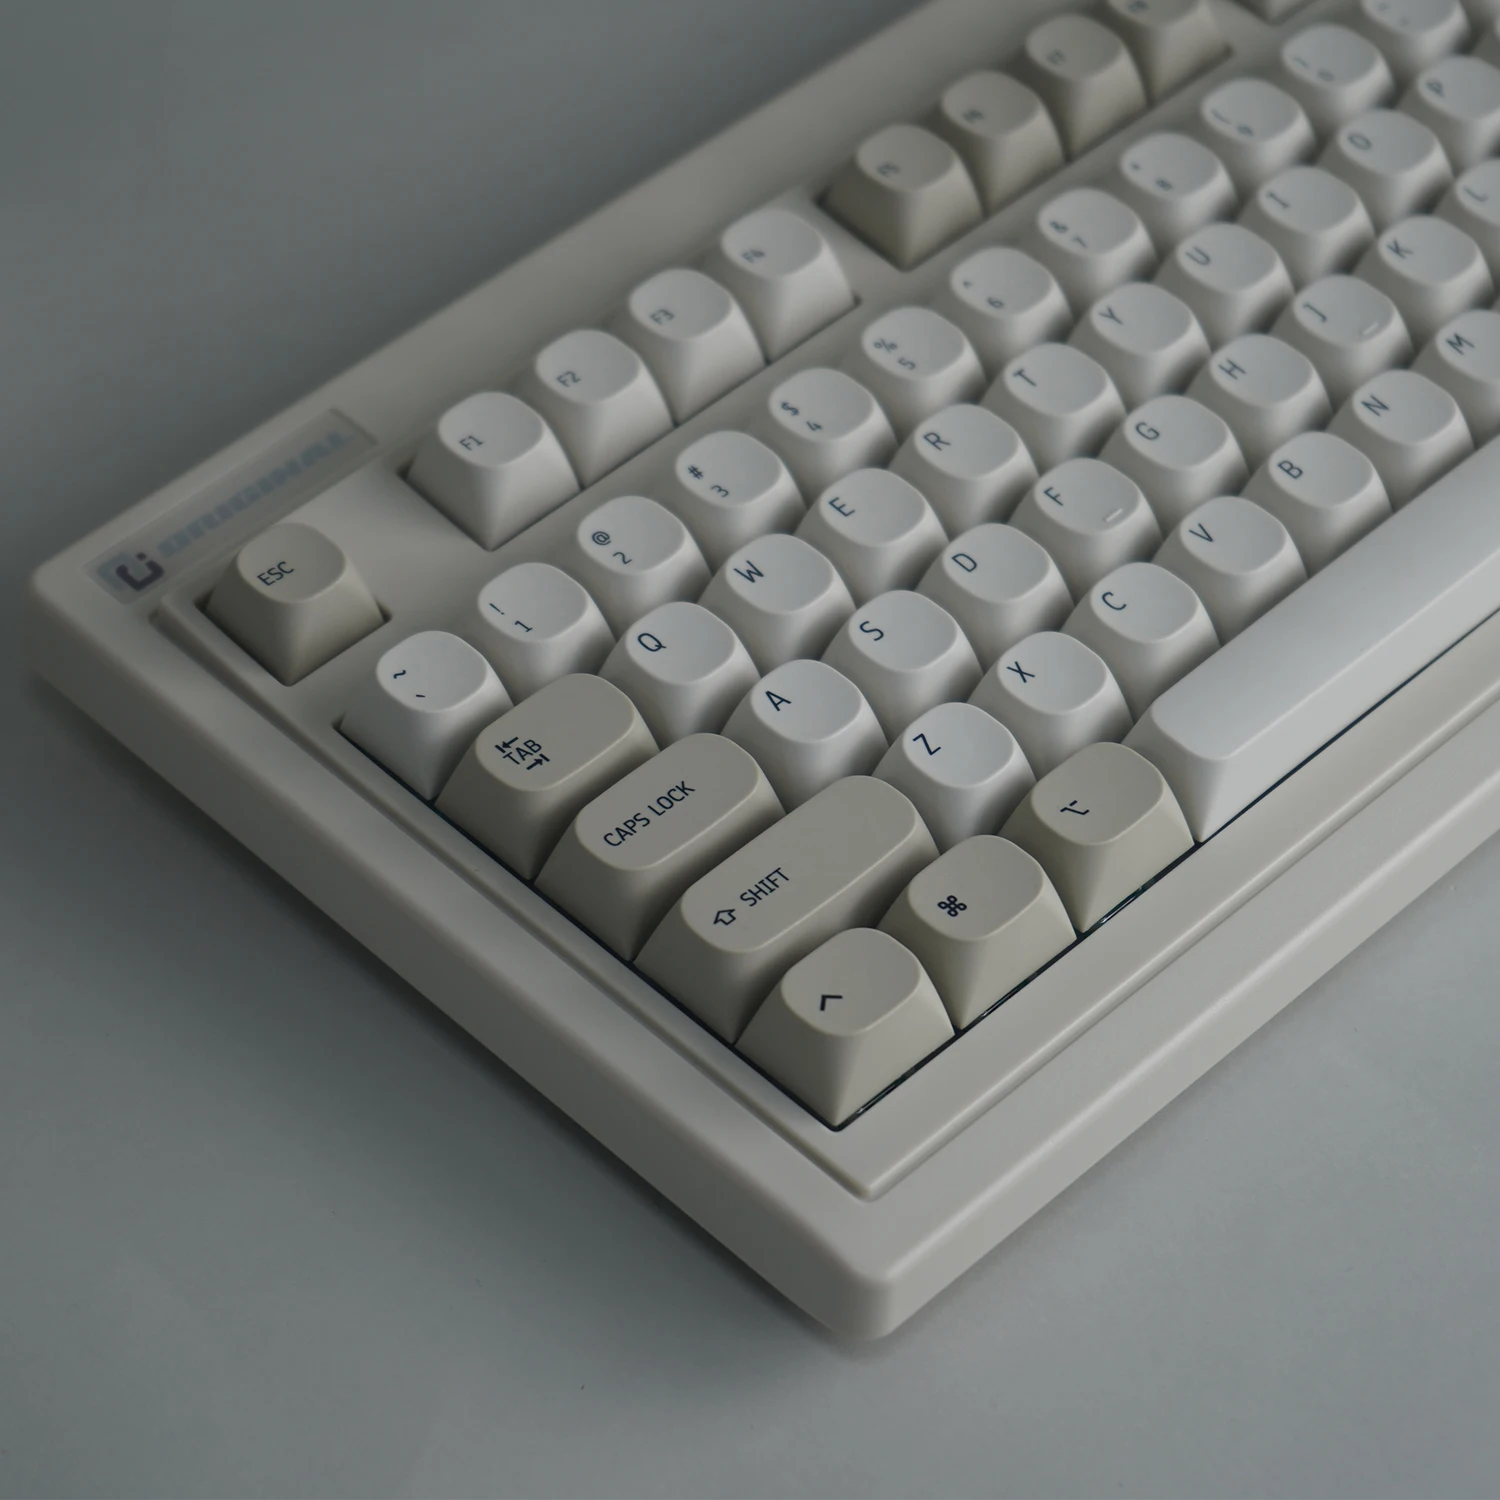 

Колпачки для клавиш в стиле ретро MA Height, колпачки для клавиш в минималистичном стиле с 131 клавишами для клавиш ISO Cherry MX Switch, игровая механическая клавиатура GMK